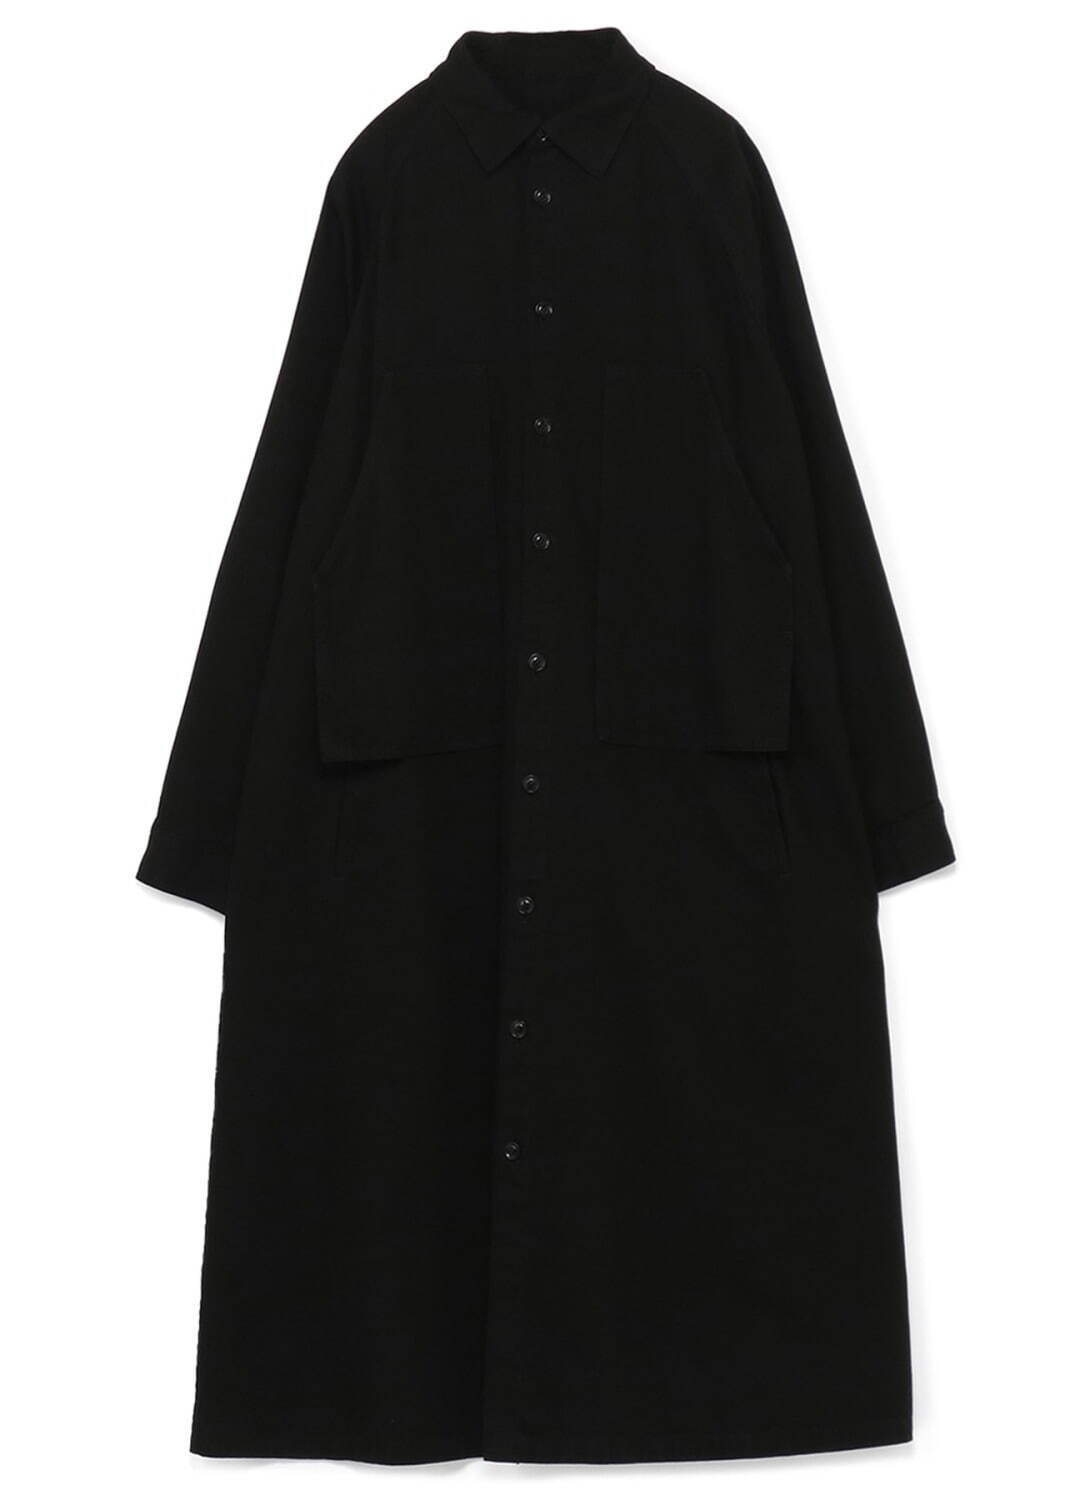 ブラックデニムシャツドレス 70,400円